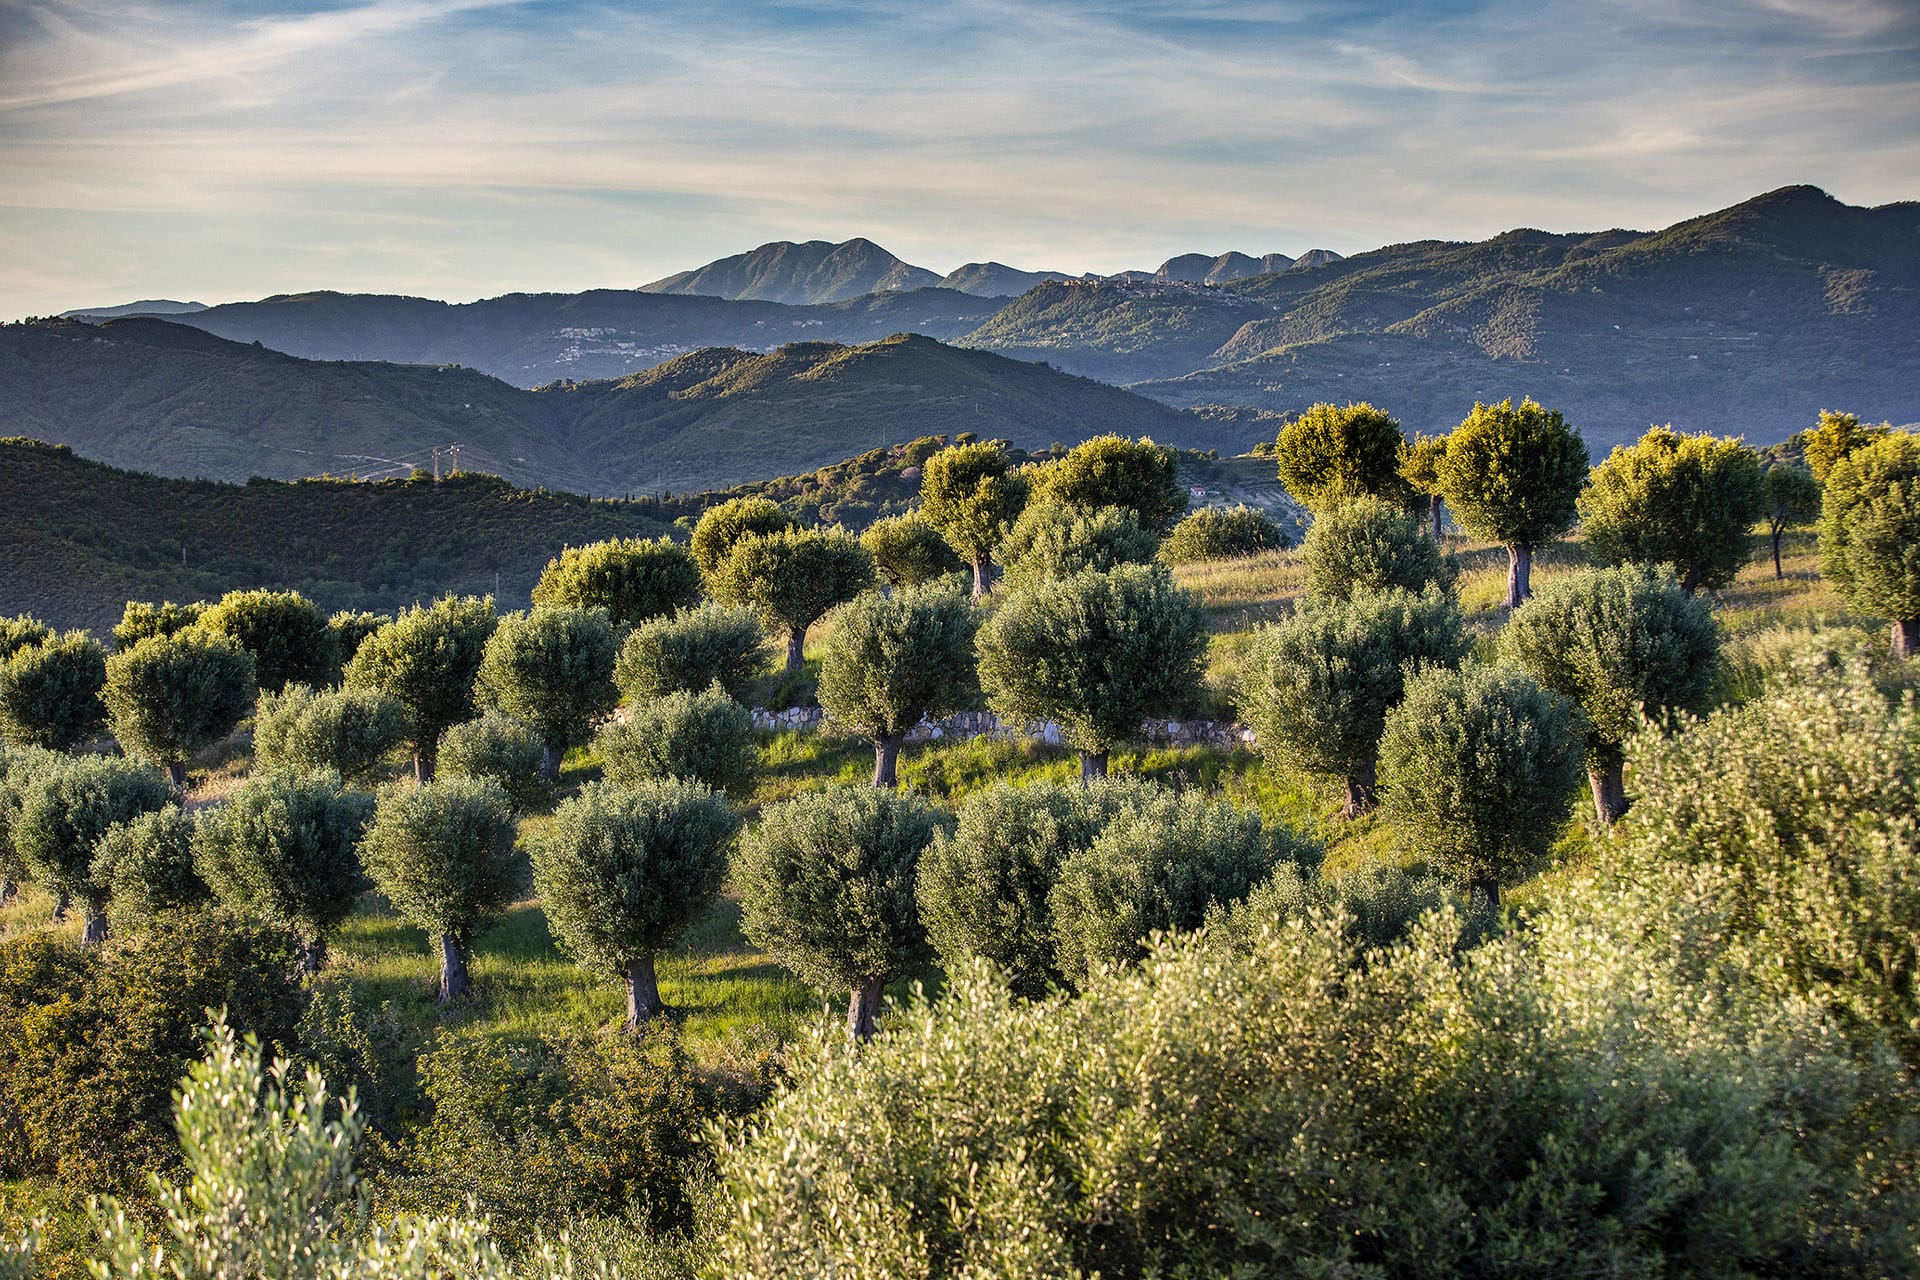 Di olivi secolari e giovani filari di frutti, che cambiano dall’alba al tramonto  ed a seconda delle stagioni